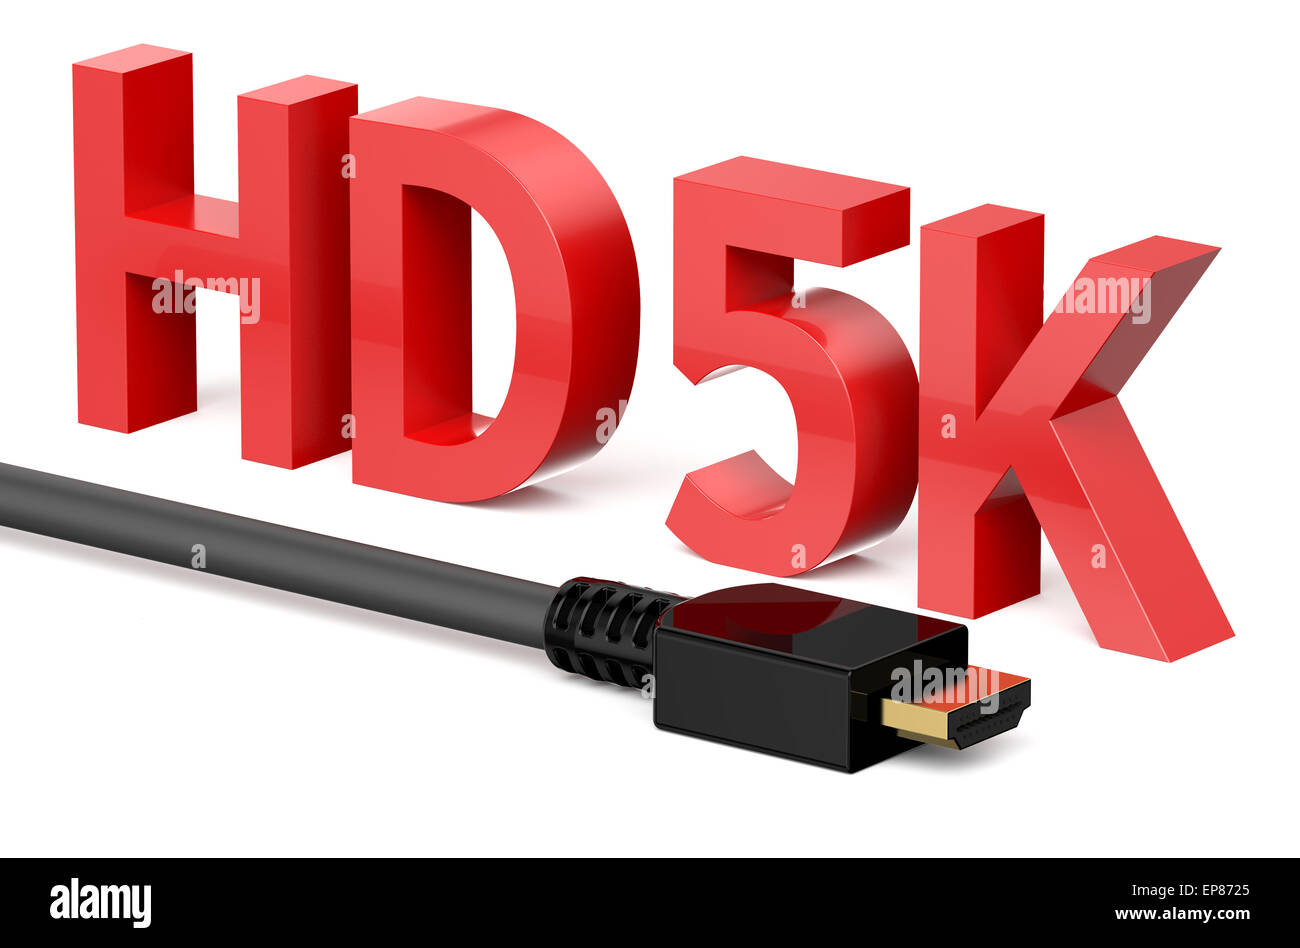 HD 5K concetto isolato su sfondo bianco Foto Stock